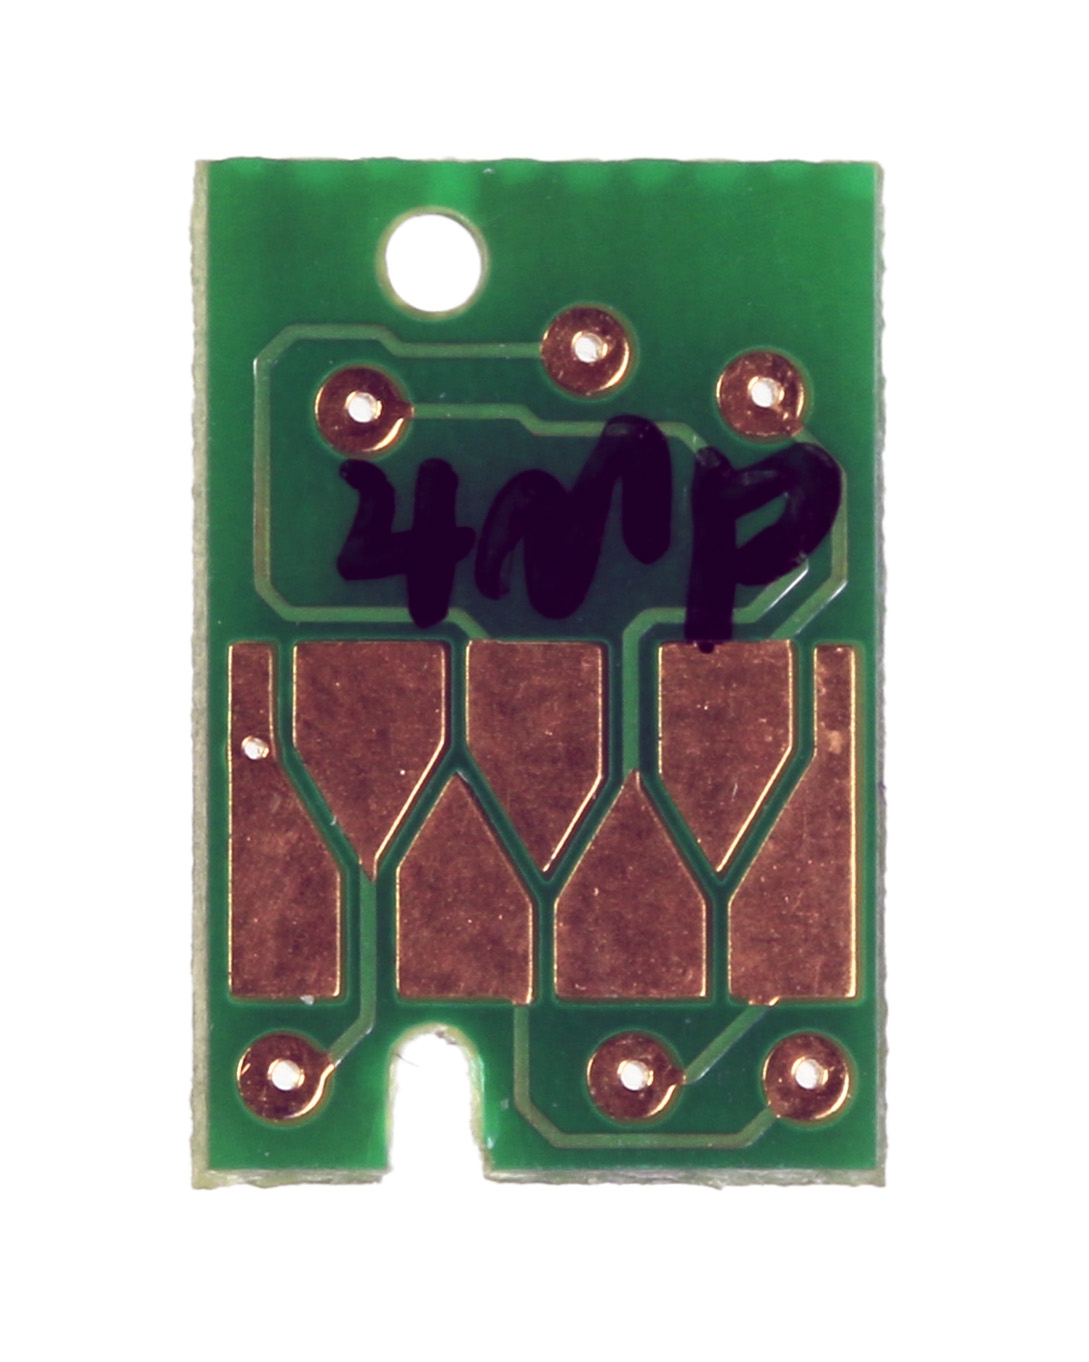 Chip für Wartungstank Epson Stylus Pro 40, 44, 48, 74, 76, 78, 94, 96, 98 Serie